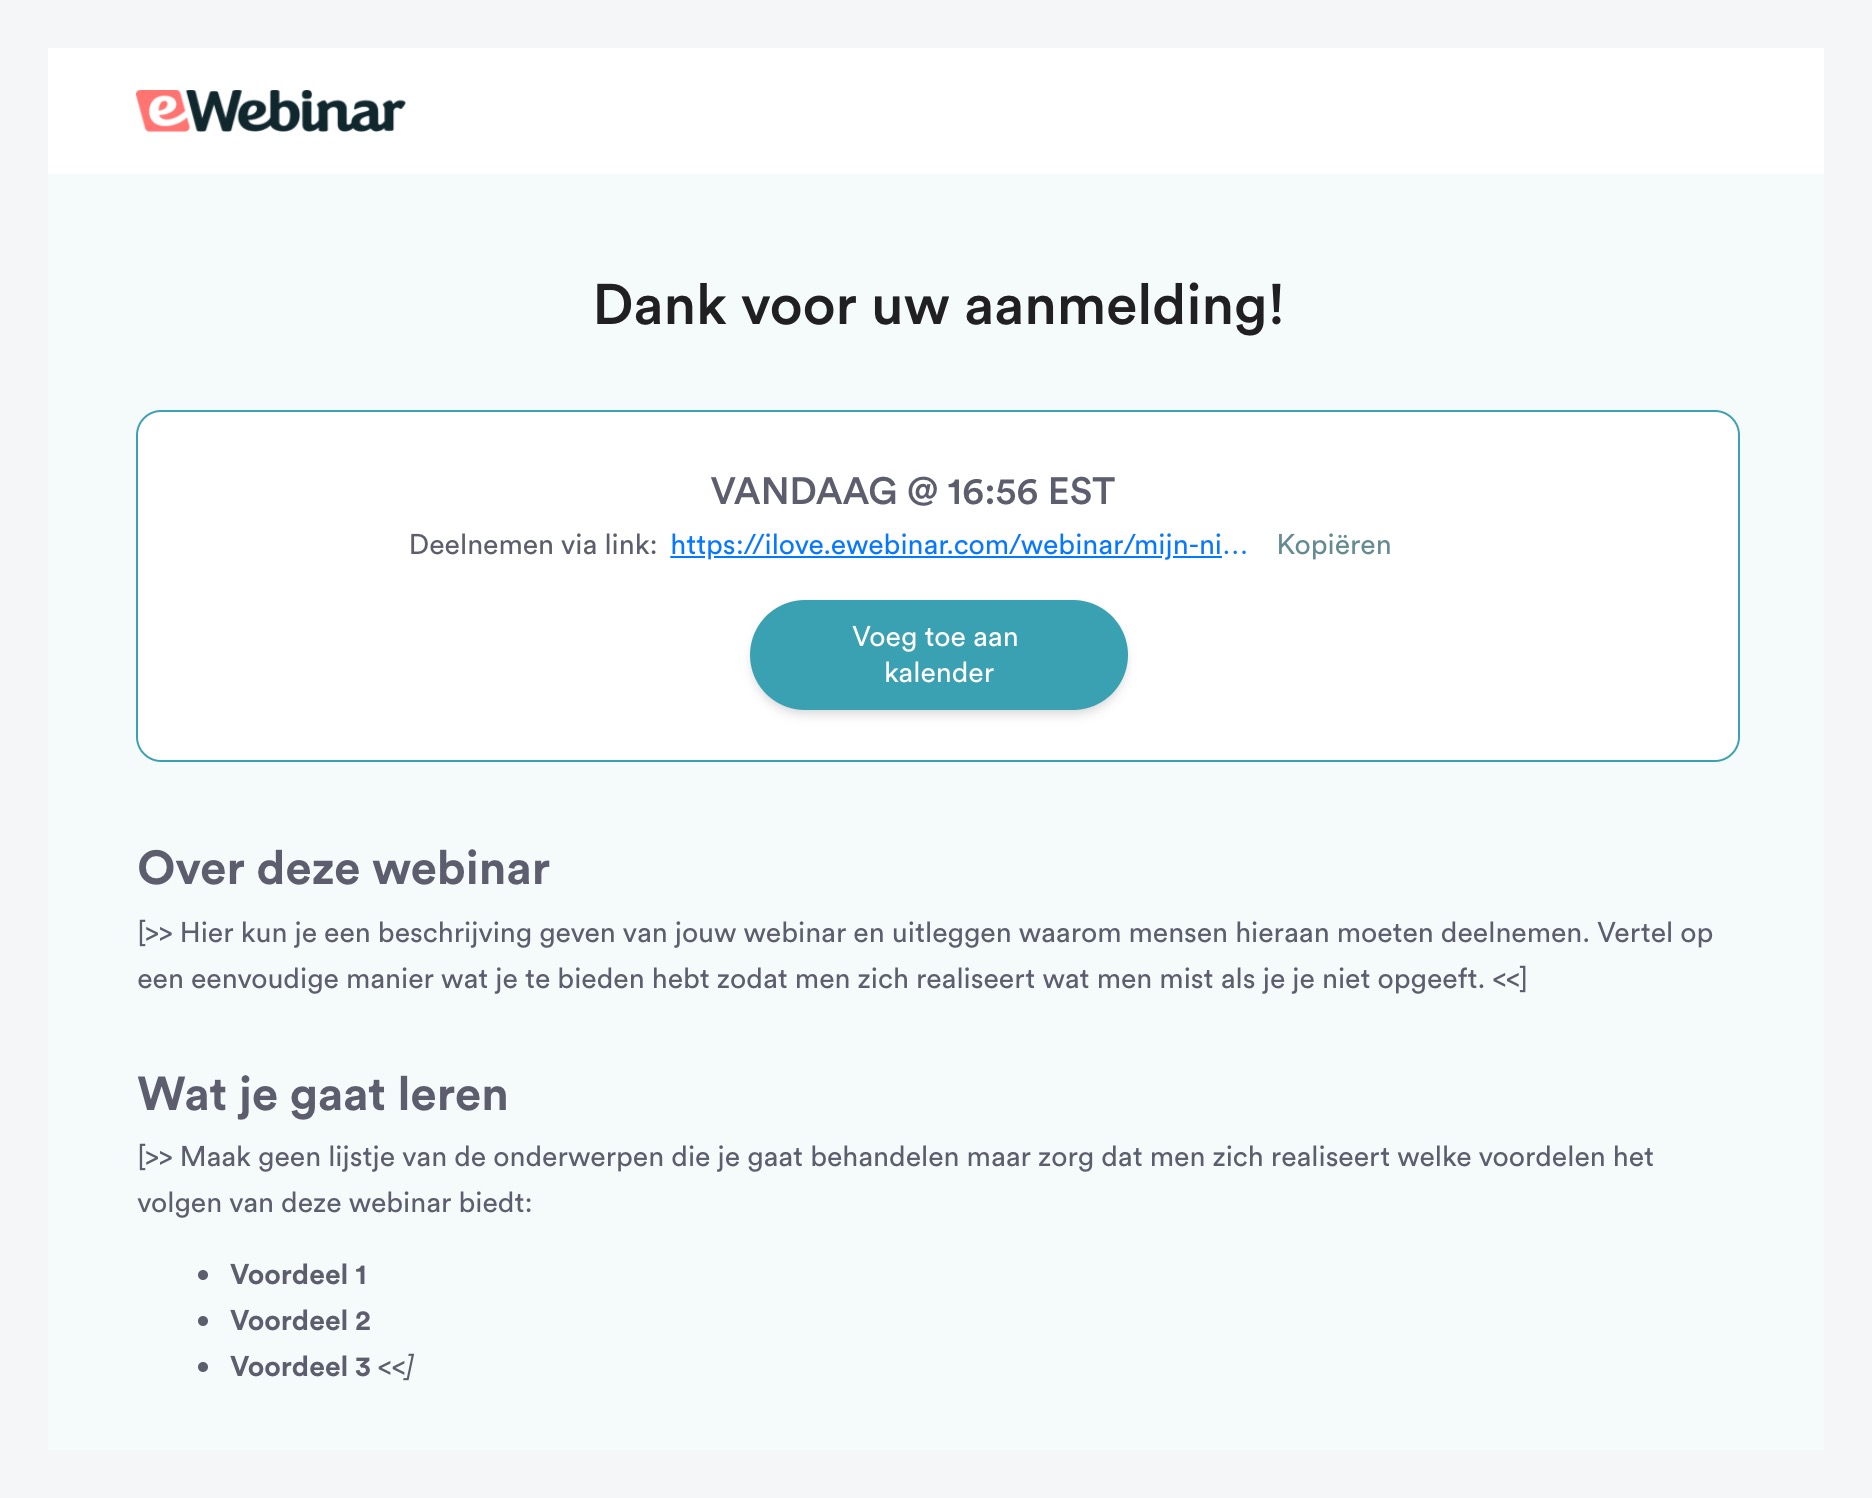 Page de remerciement dans le modèle standard d'eWebinar en néerlandais